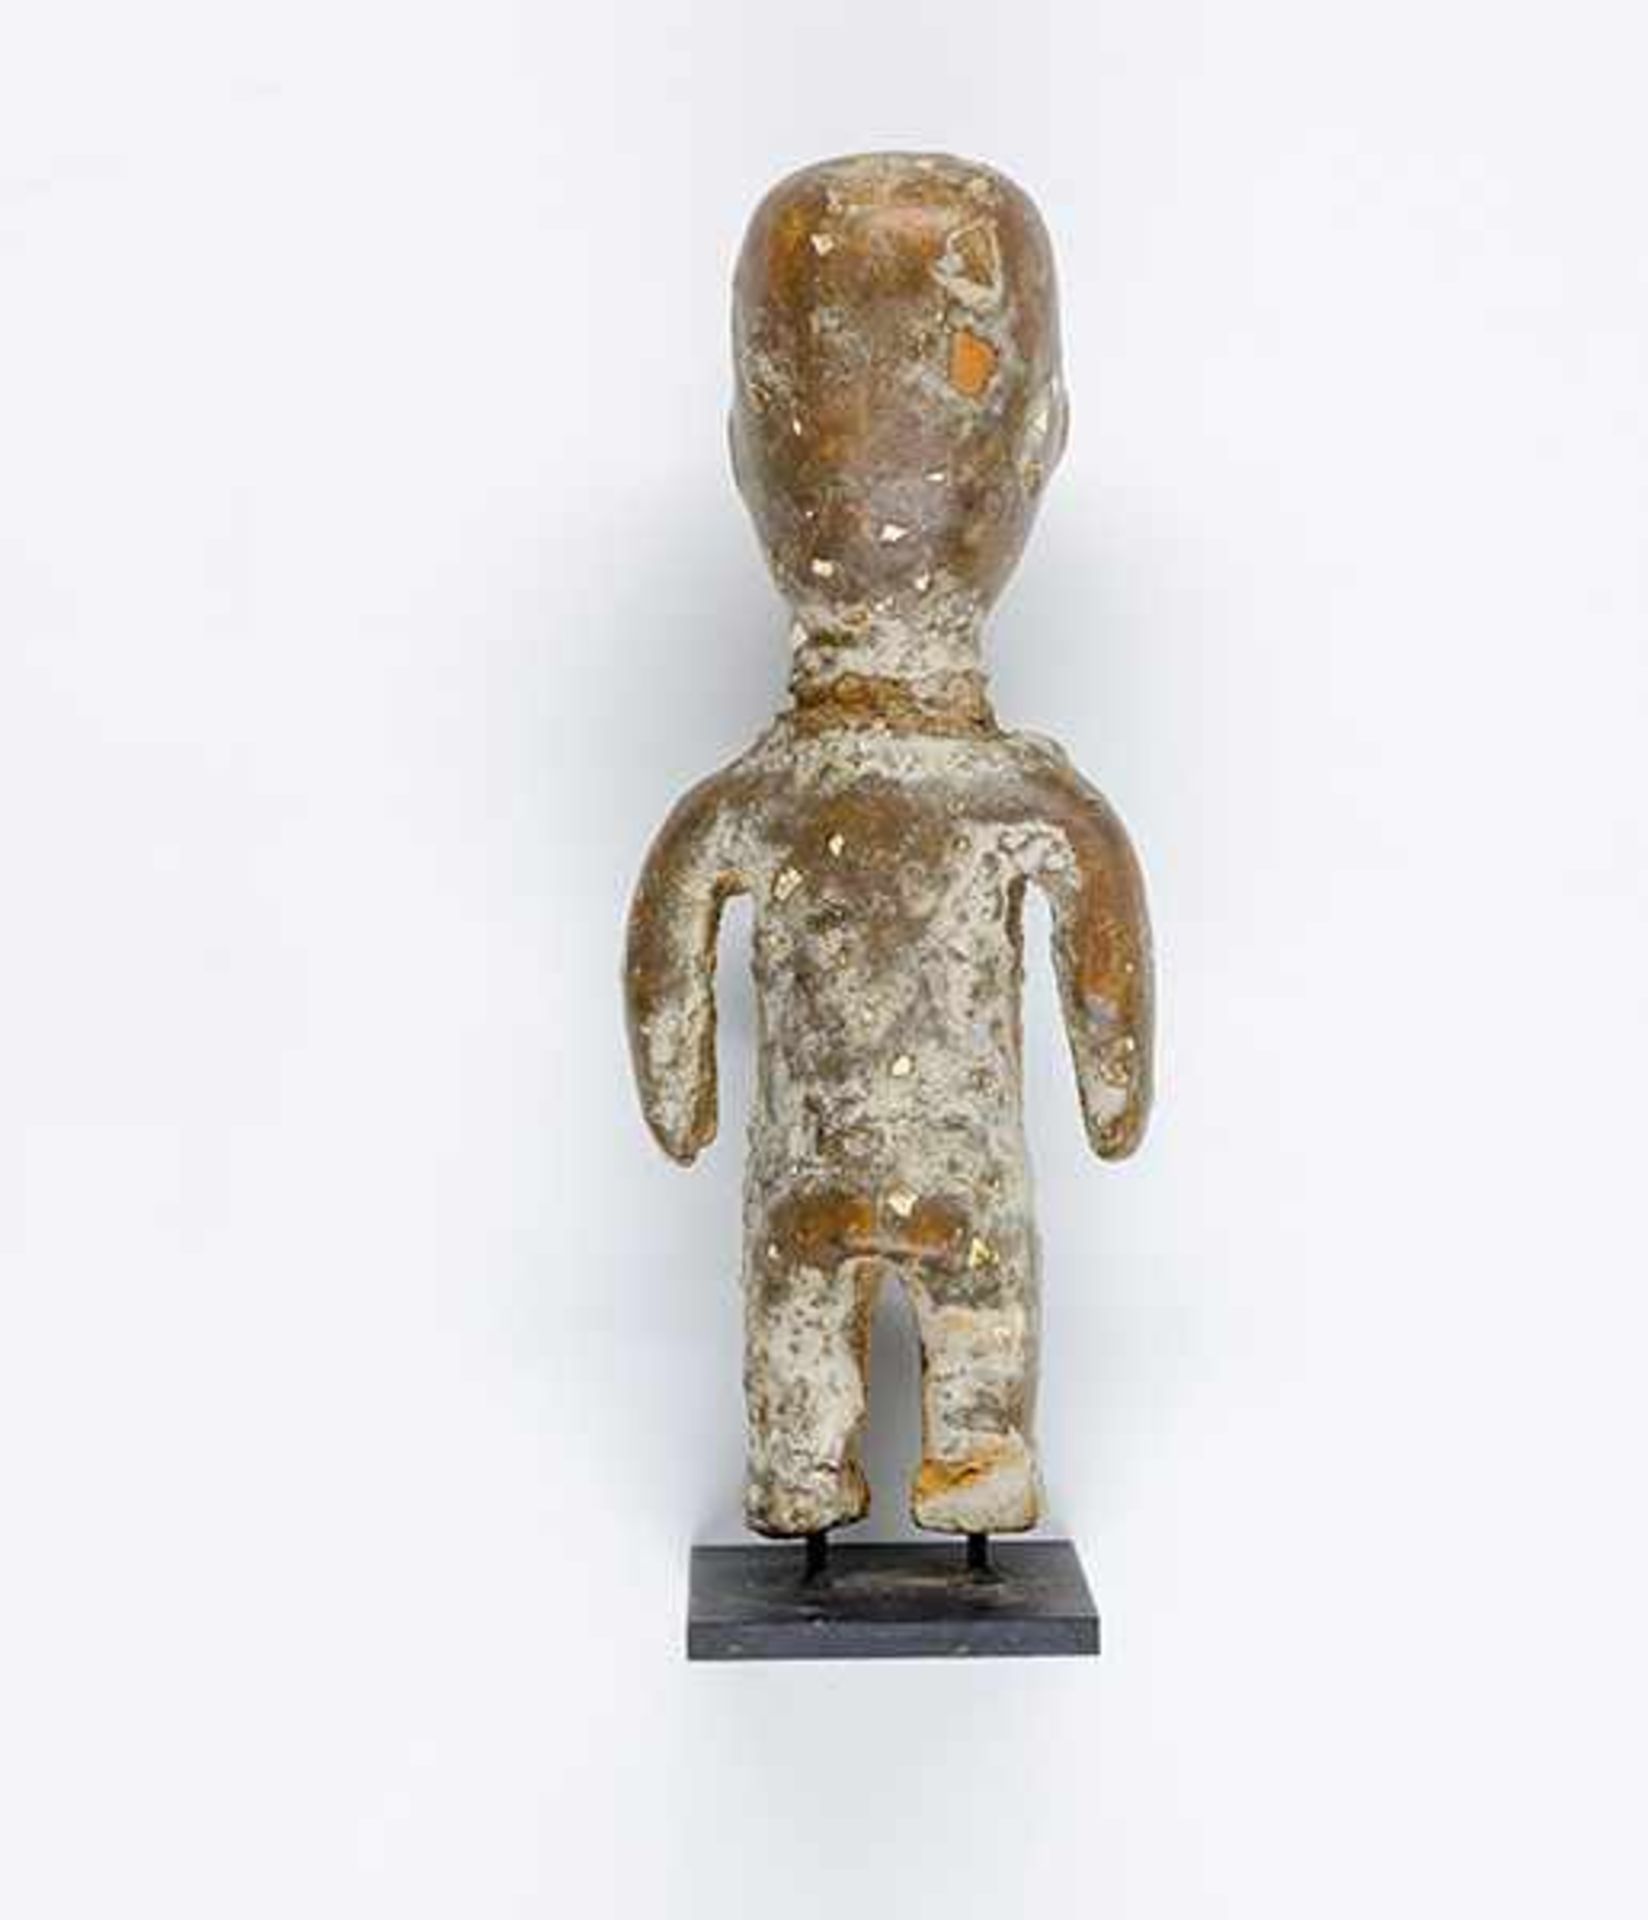 Afrikana - - Opferfigur, Ghana. Holz, gekalkt, Opferpatina mit Eierschalen. Größe: 17,5 x 7 cm. - Bild 2 aus 5